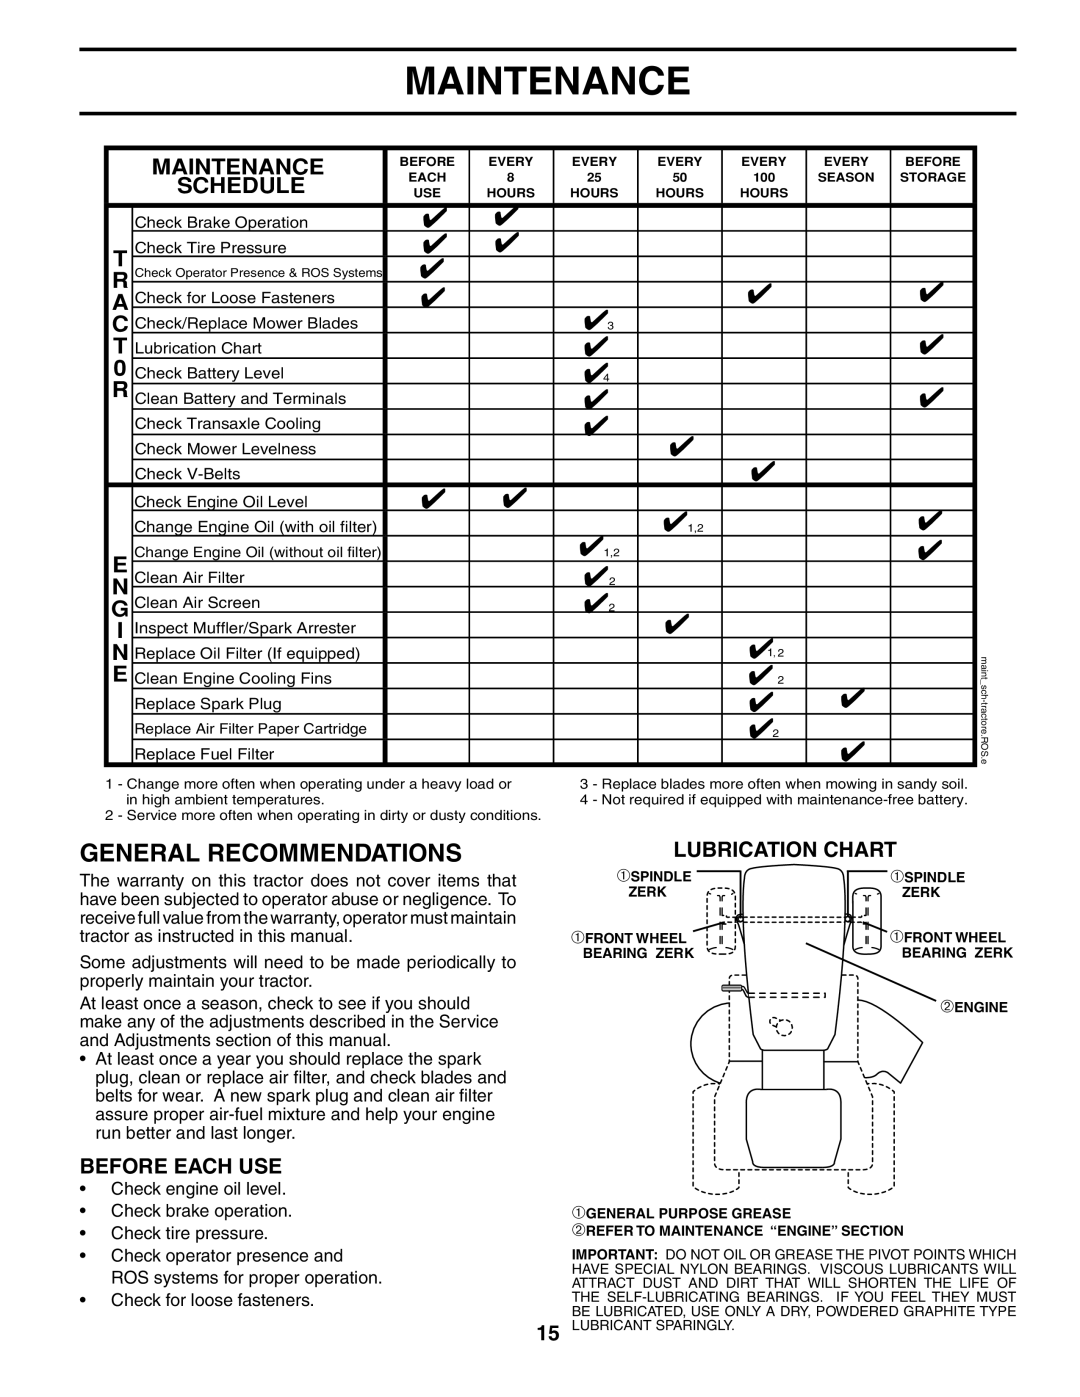 Poulan 405327 manual Maintenance, Lubrication Chart 